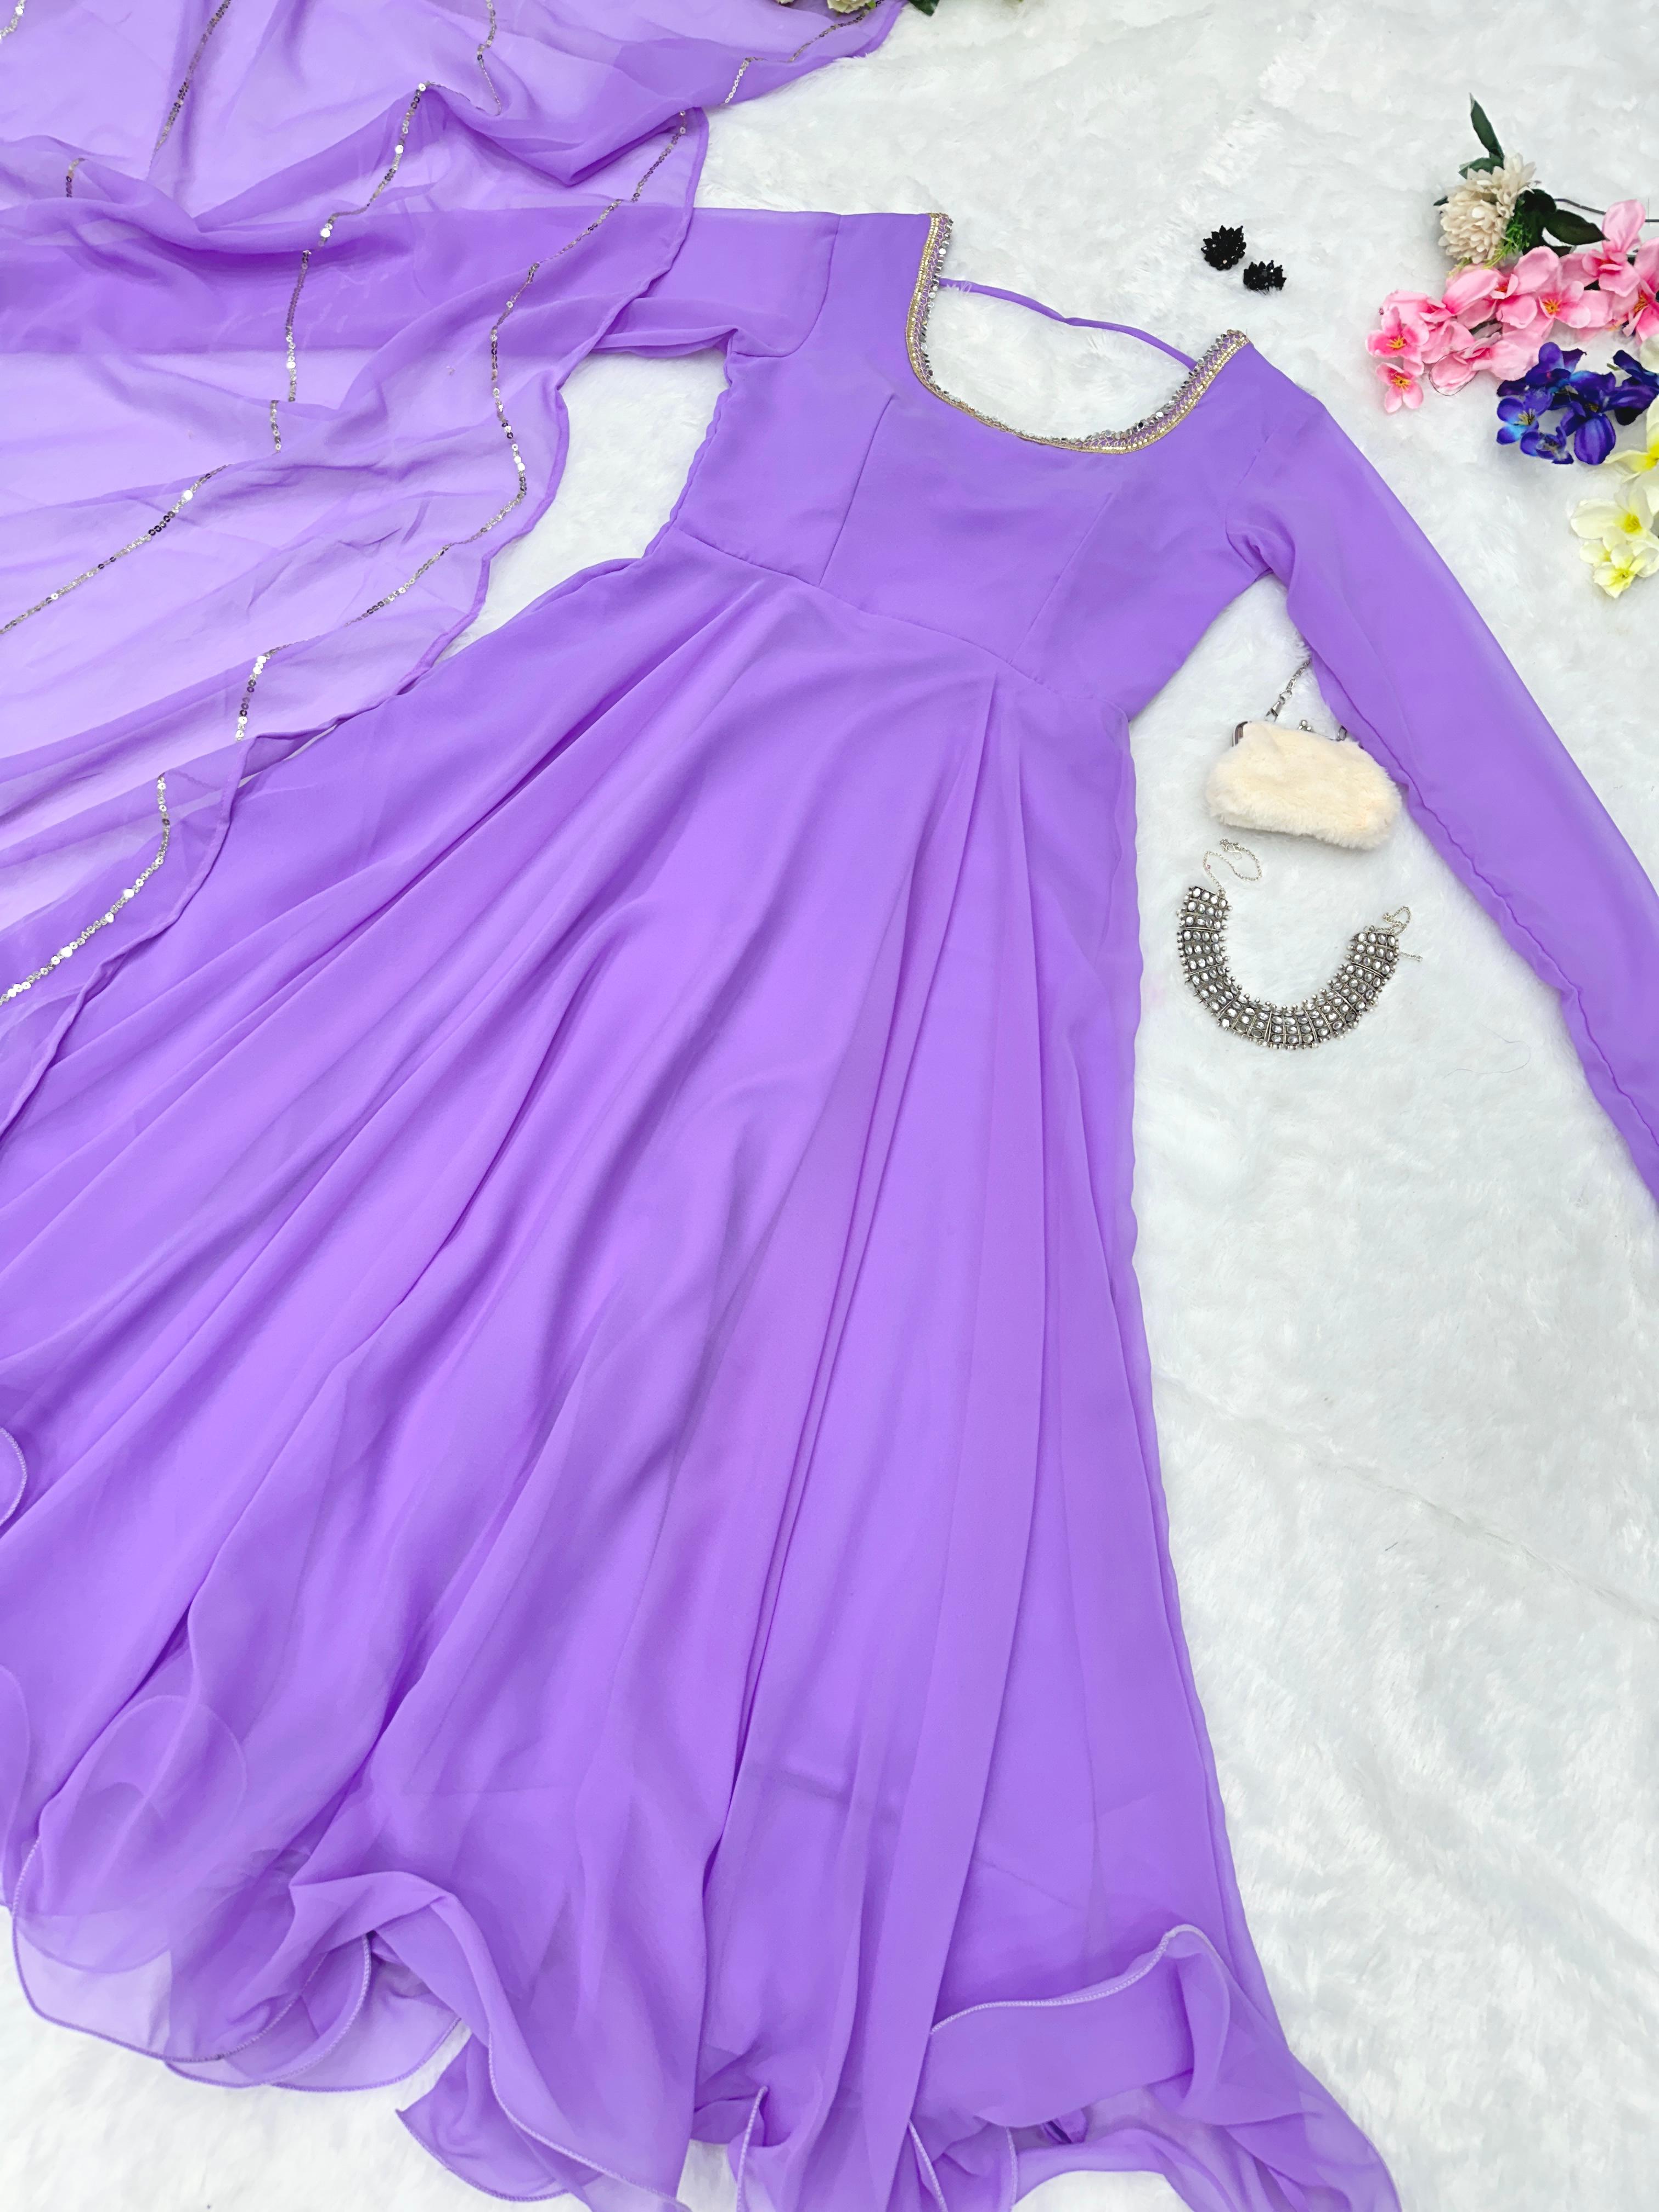 Festive Wear Shine Border Lavender Color Gown